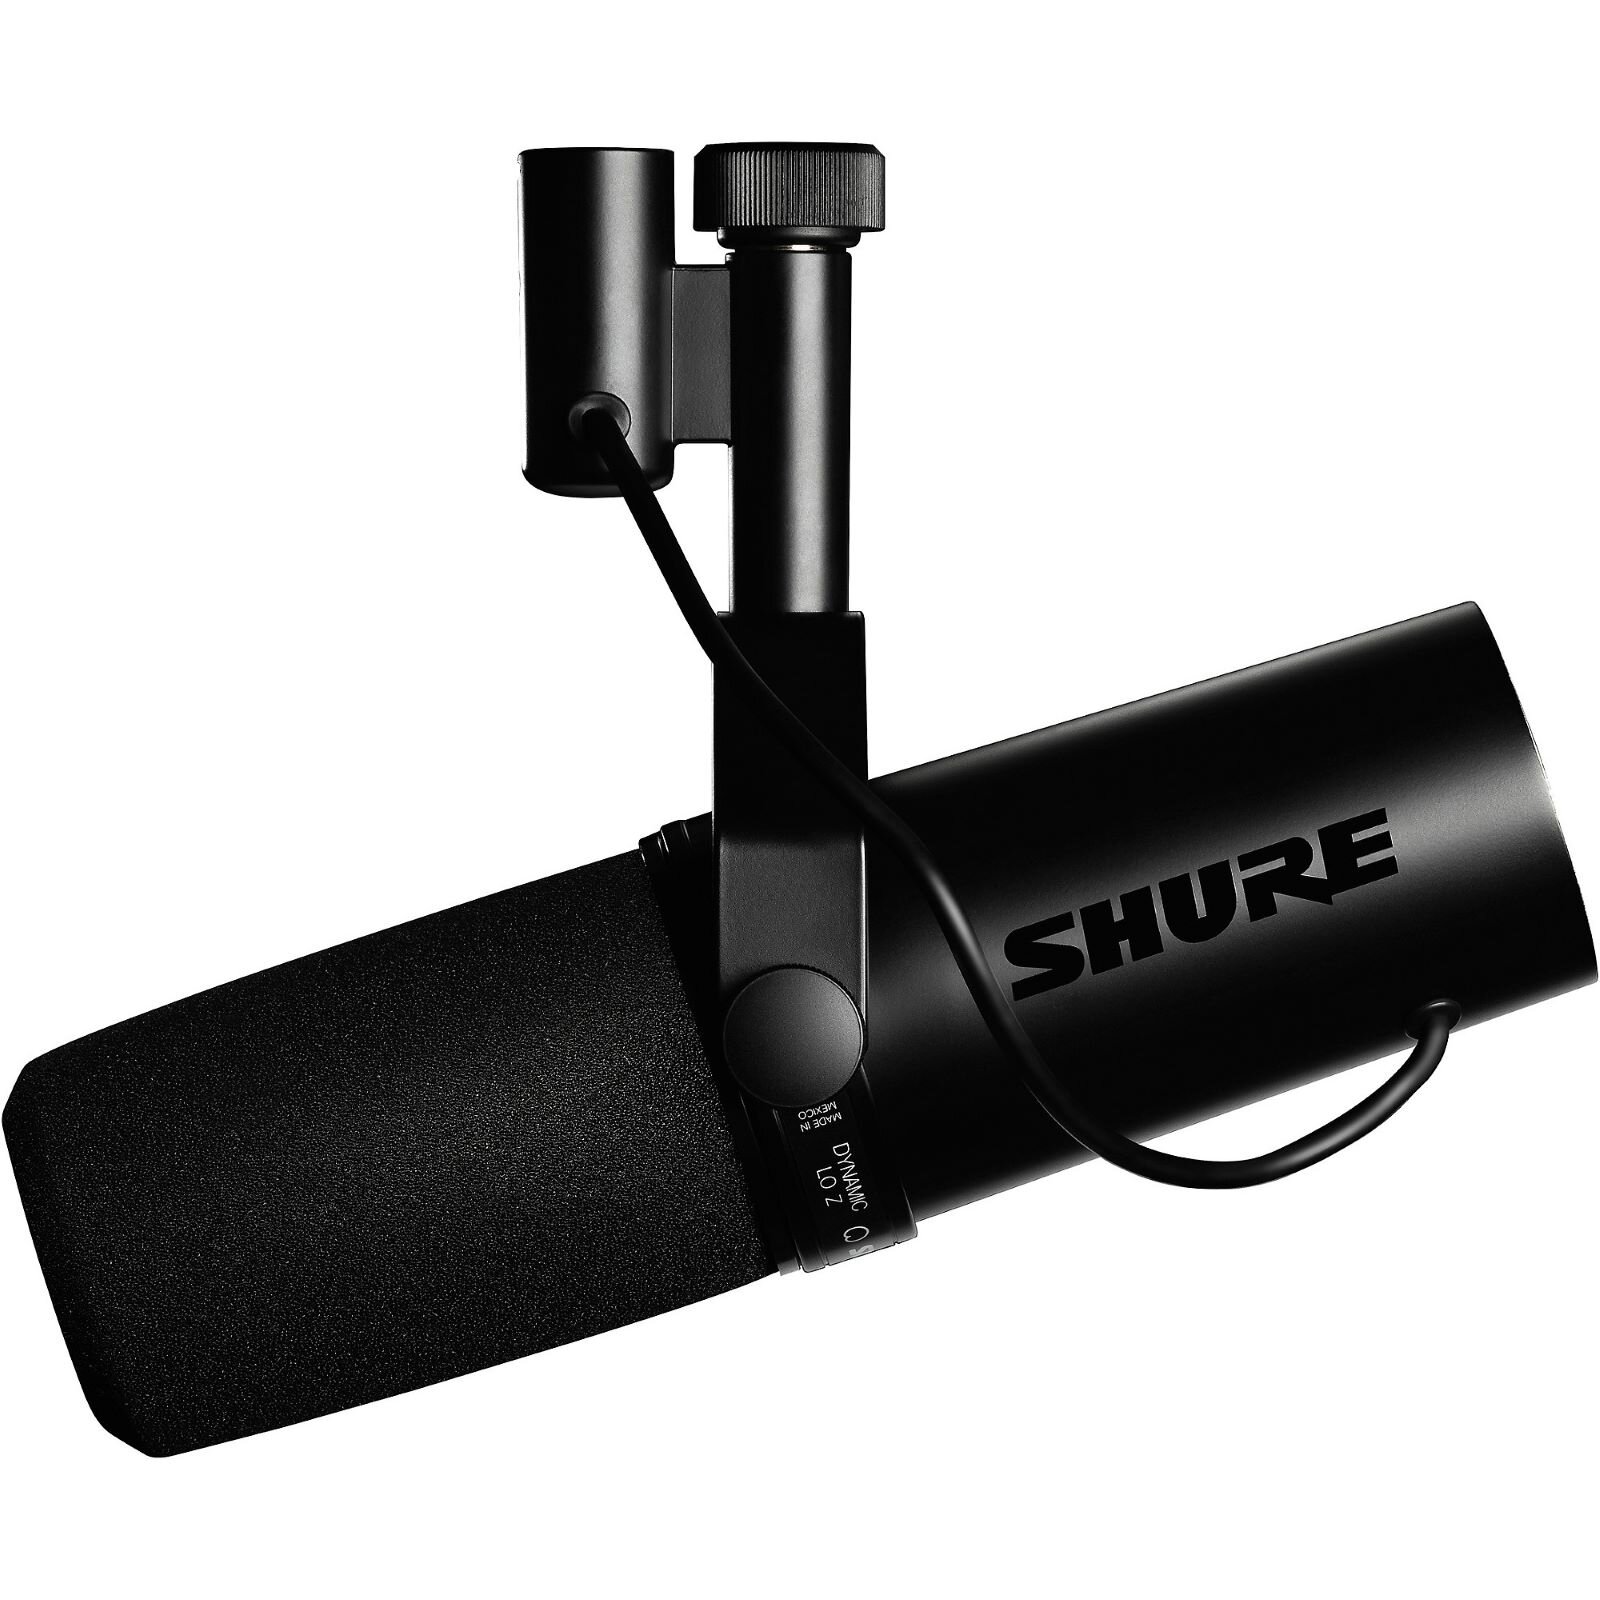 Shure microphone dynamique avec Preamp intégré (SM7DB) : photo 1